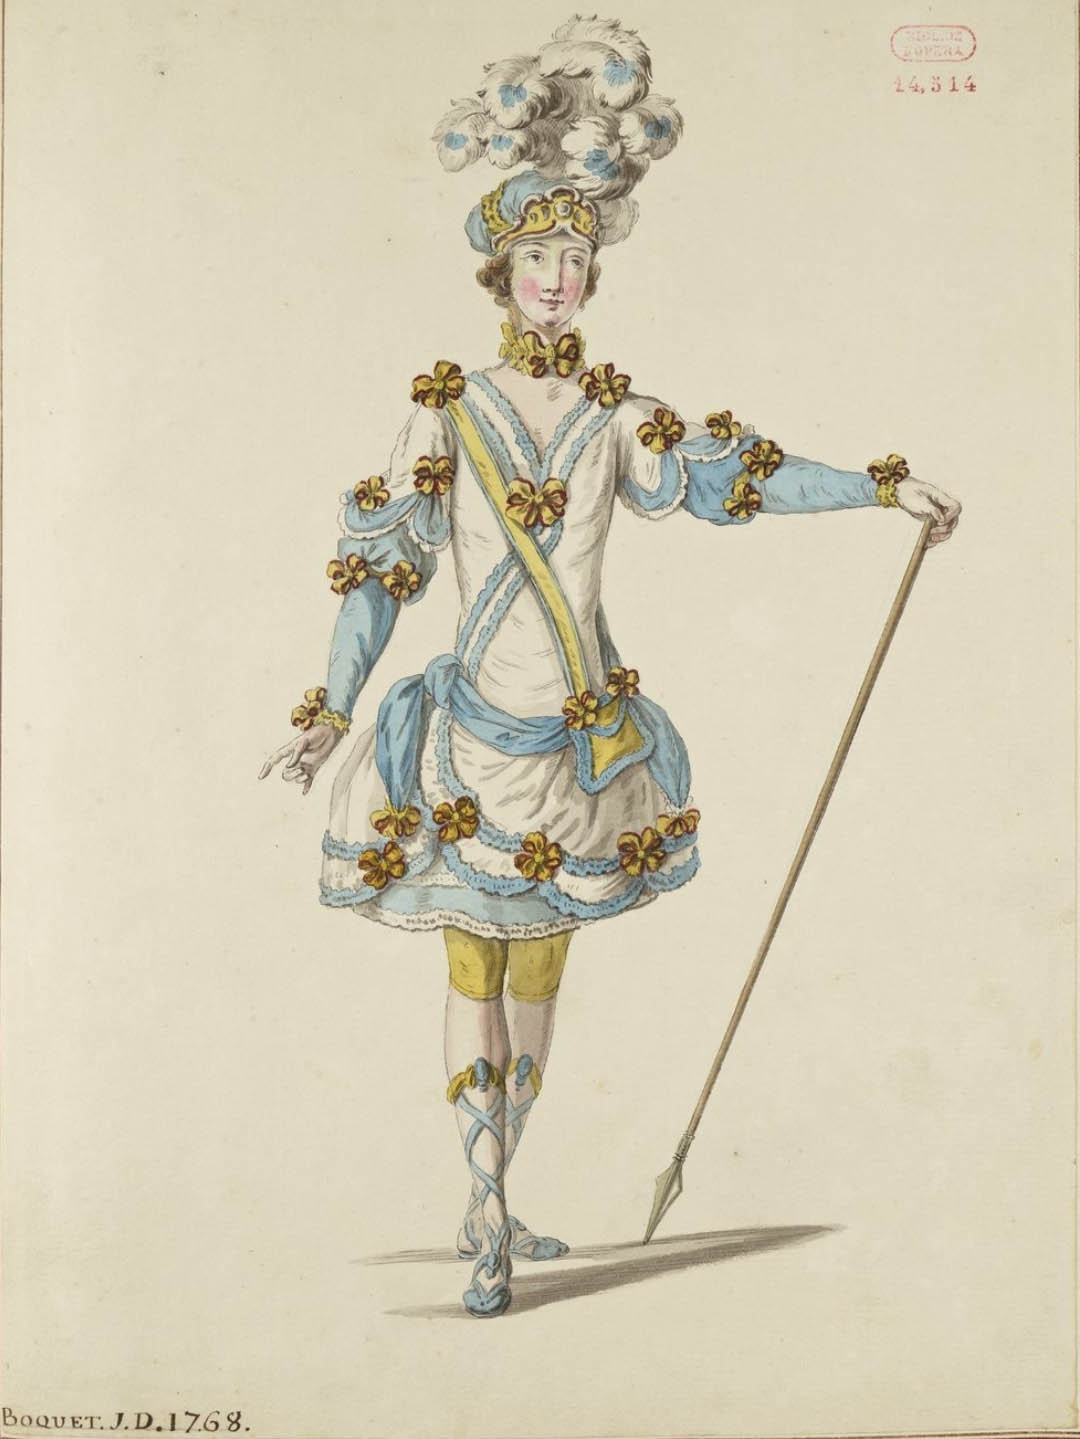 Costume masculin par Louis-René BOQUET, 1768 (source Gallica, BNF.FR)